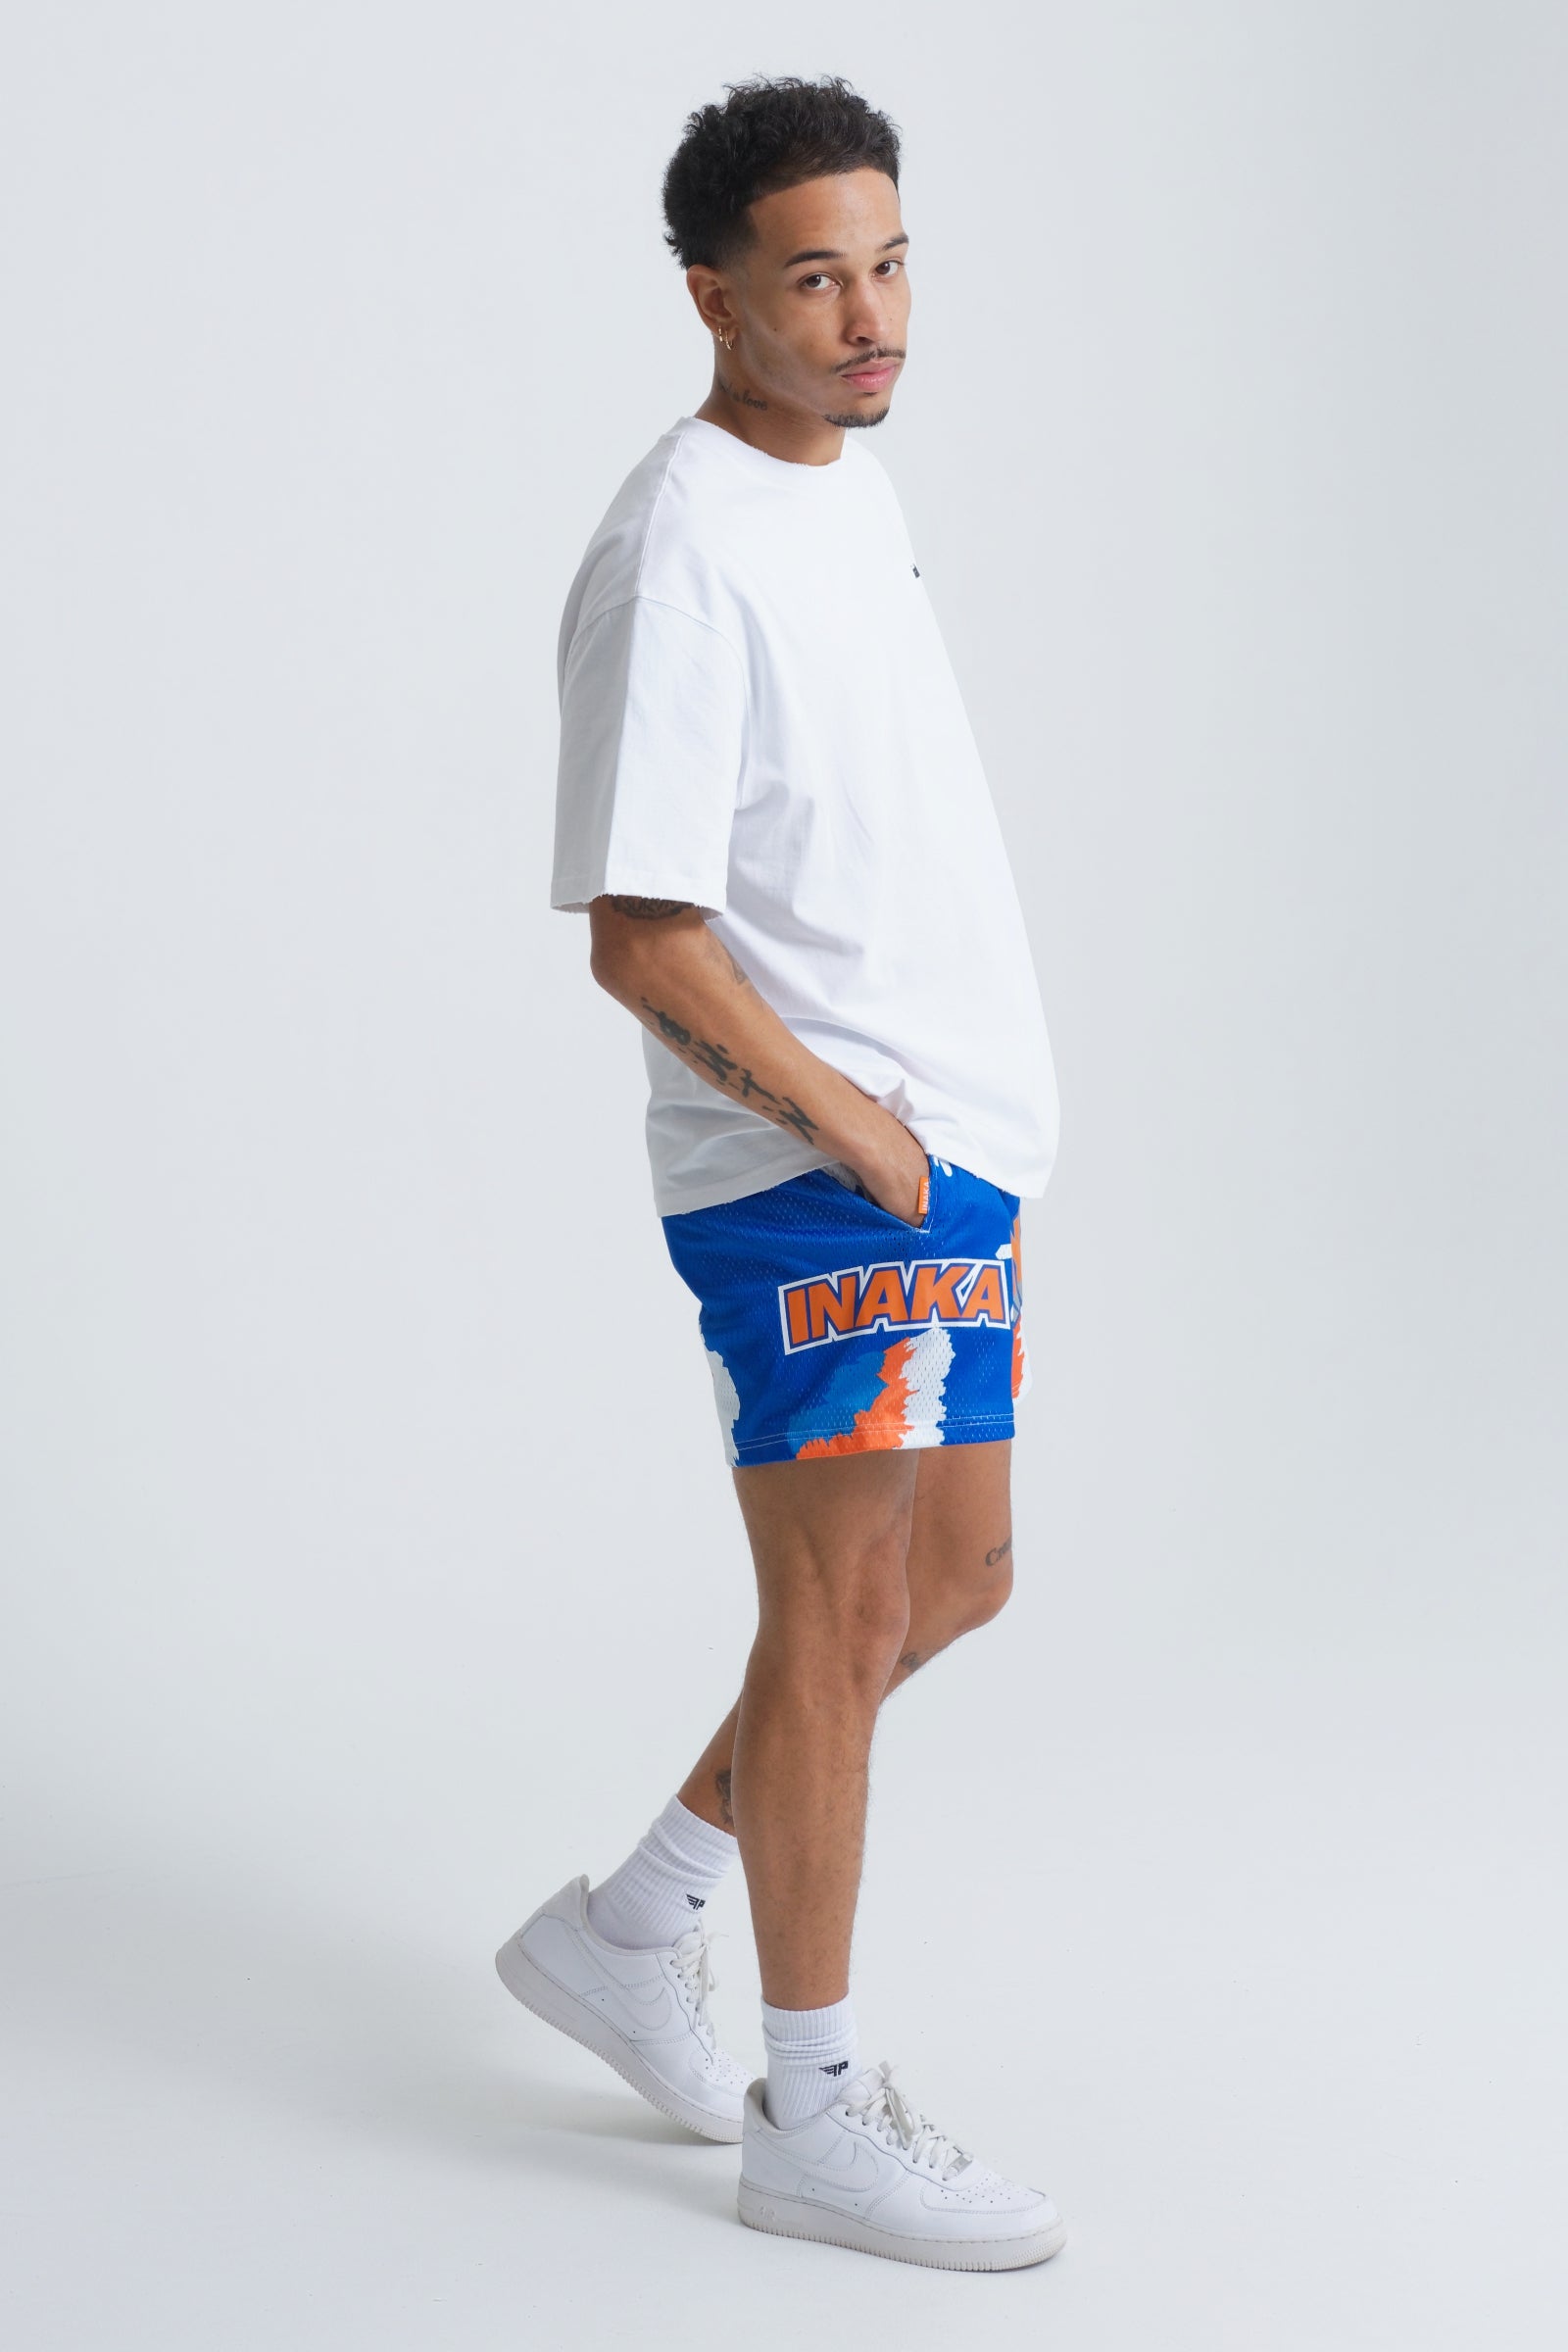 Men's Tie Dye Shorts - Knicks